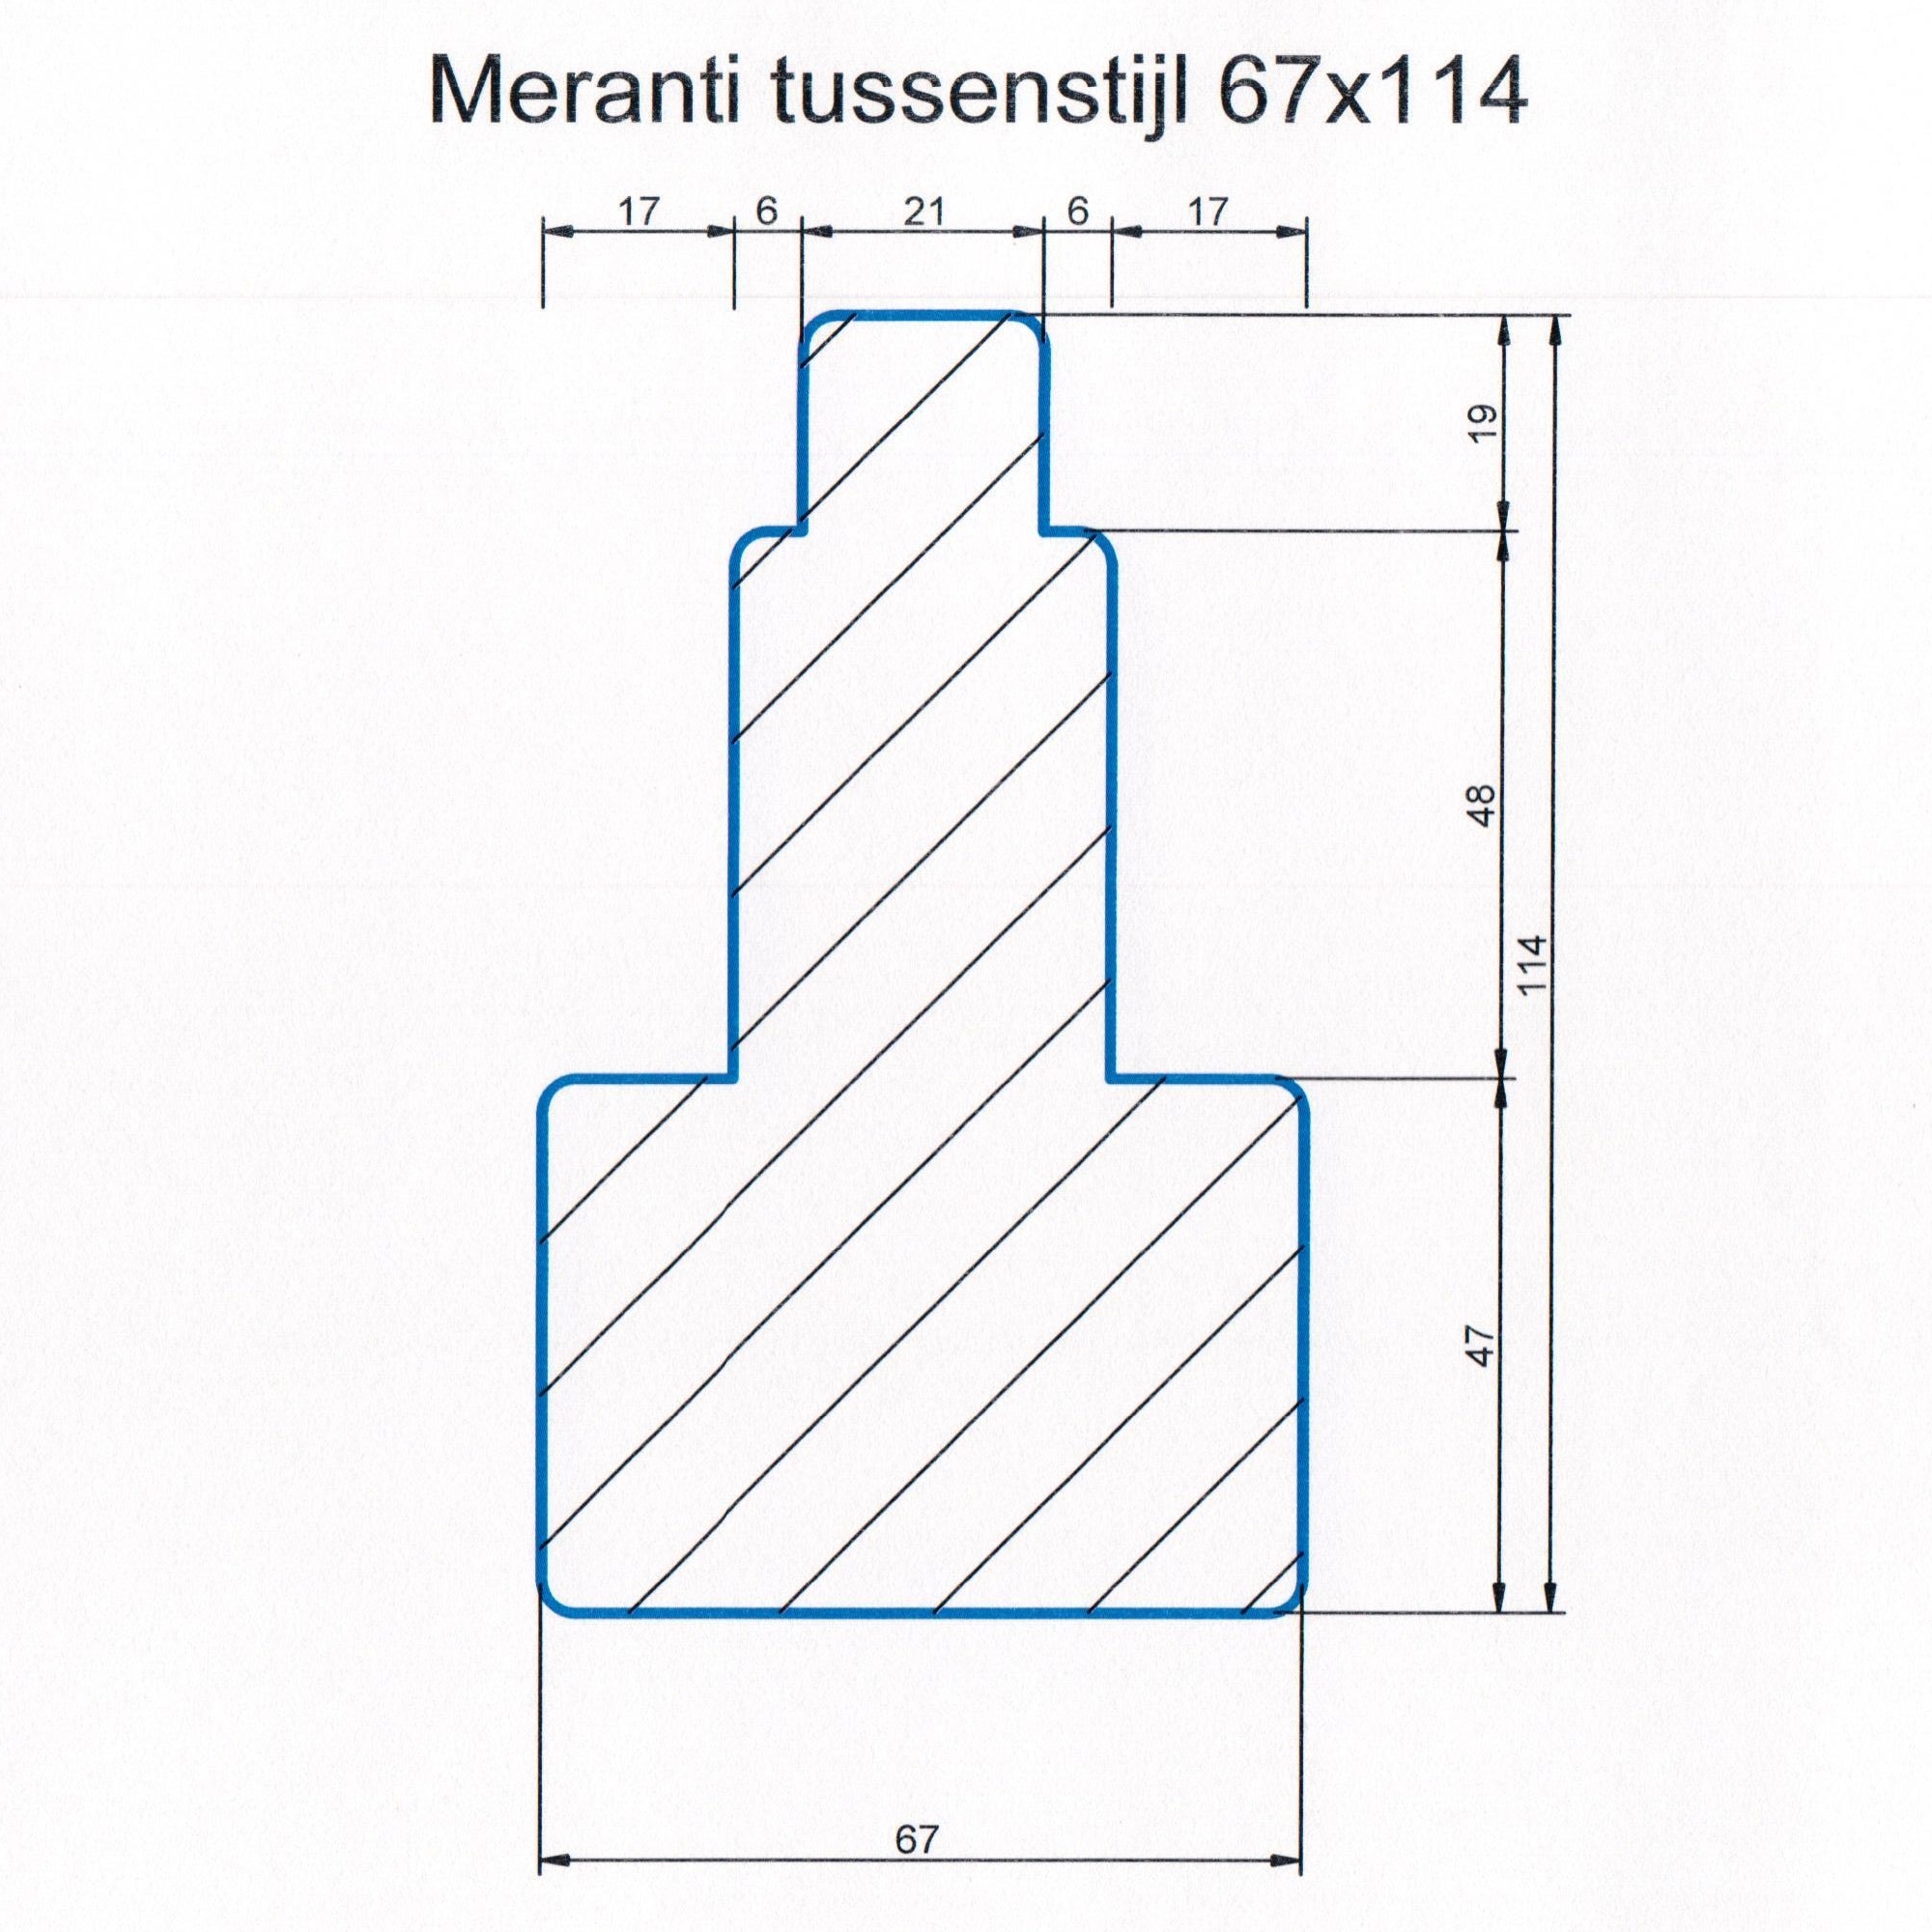 Meranti 67x114 kozijnhout Tussenstijl L=4000 mm